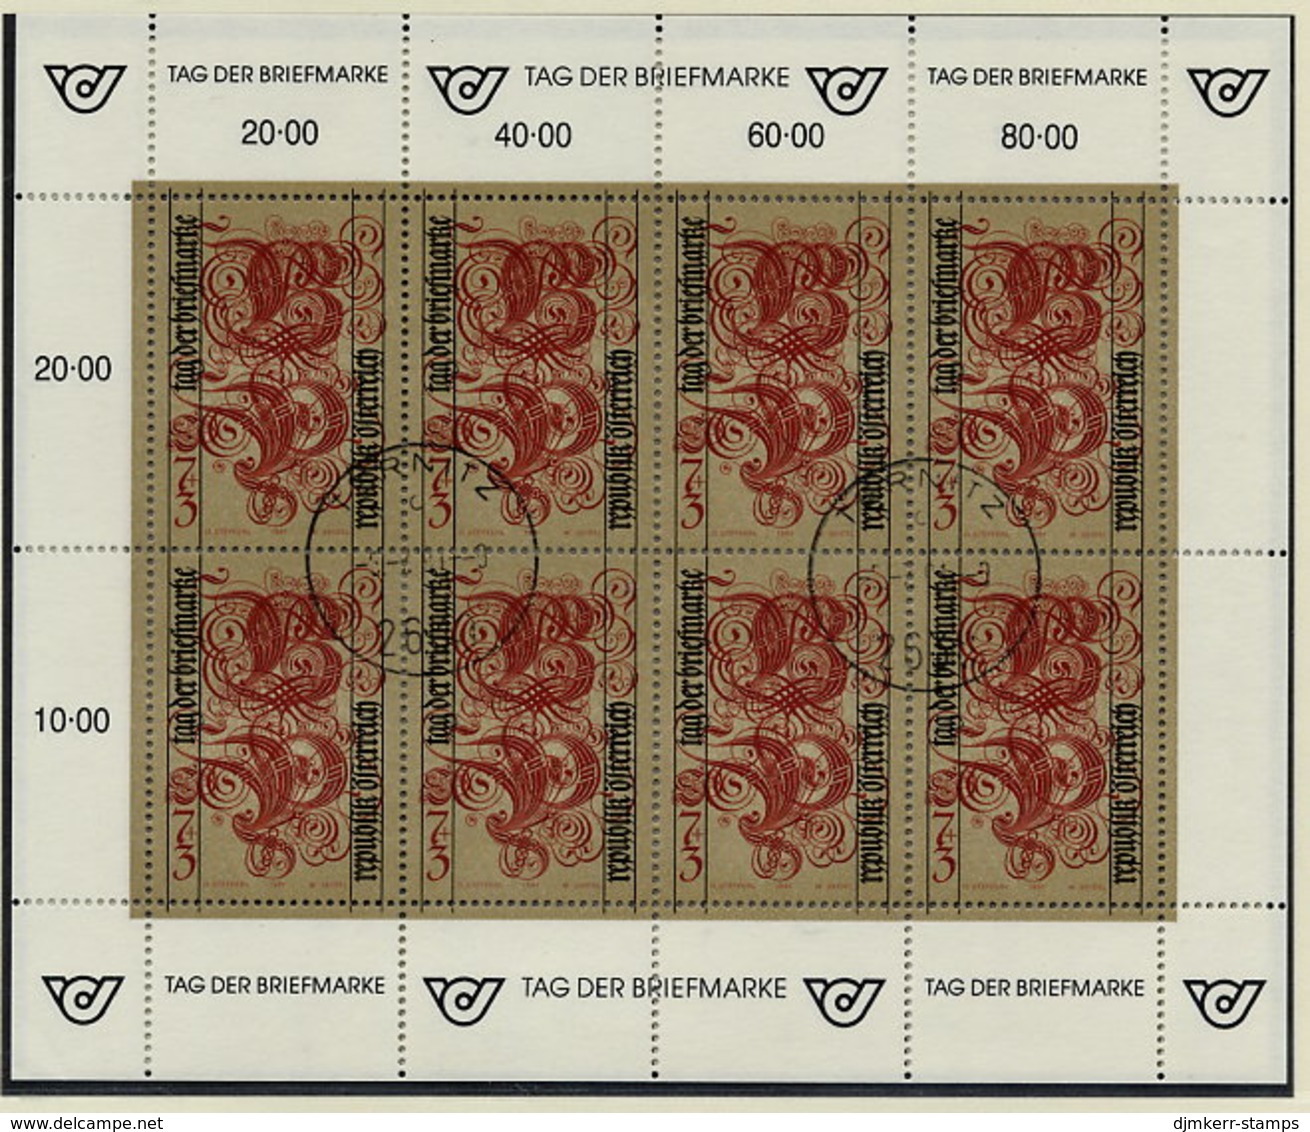 AUSTRIA 1991 Stamp Day Sheetlet, Postally Used On Registered Card.  Michel 2032 Kb - Blokken & Velletjes